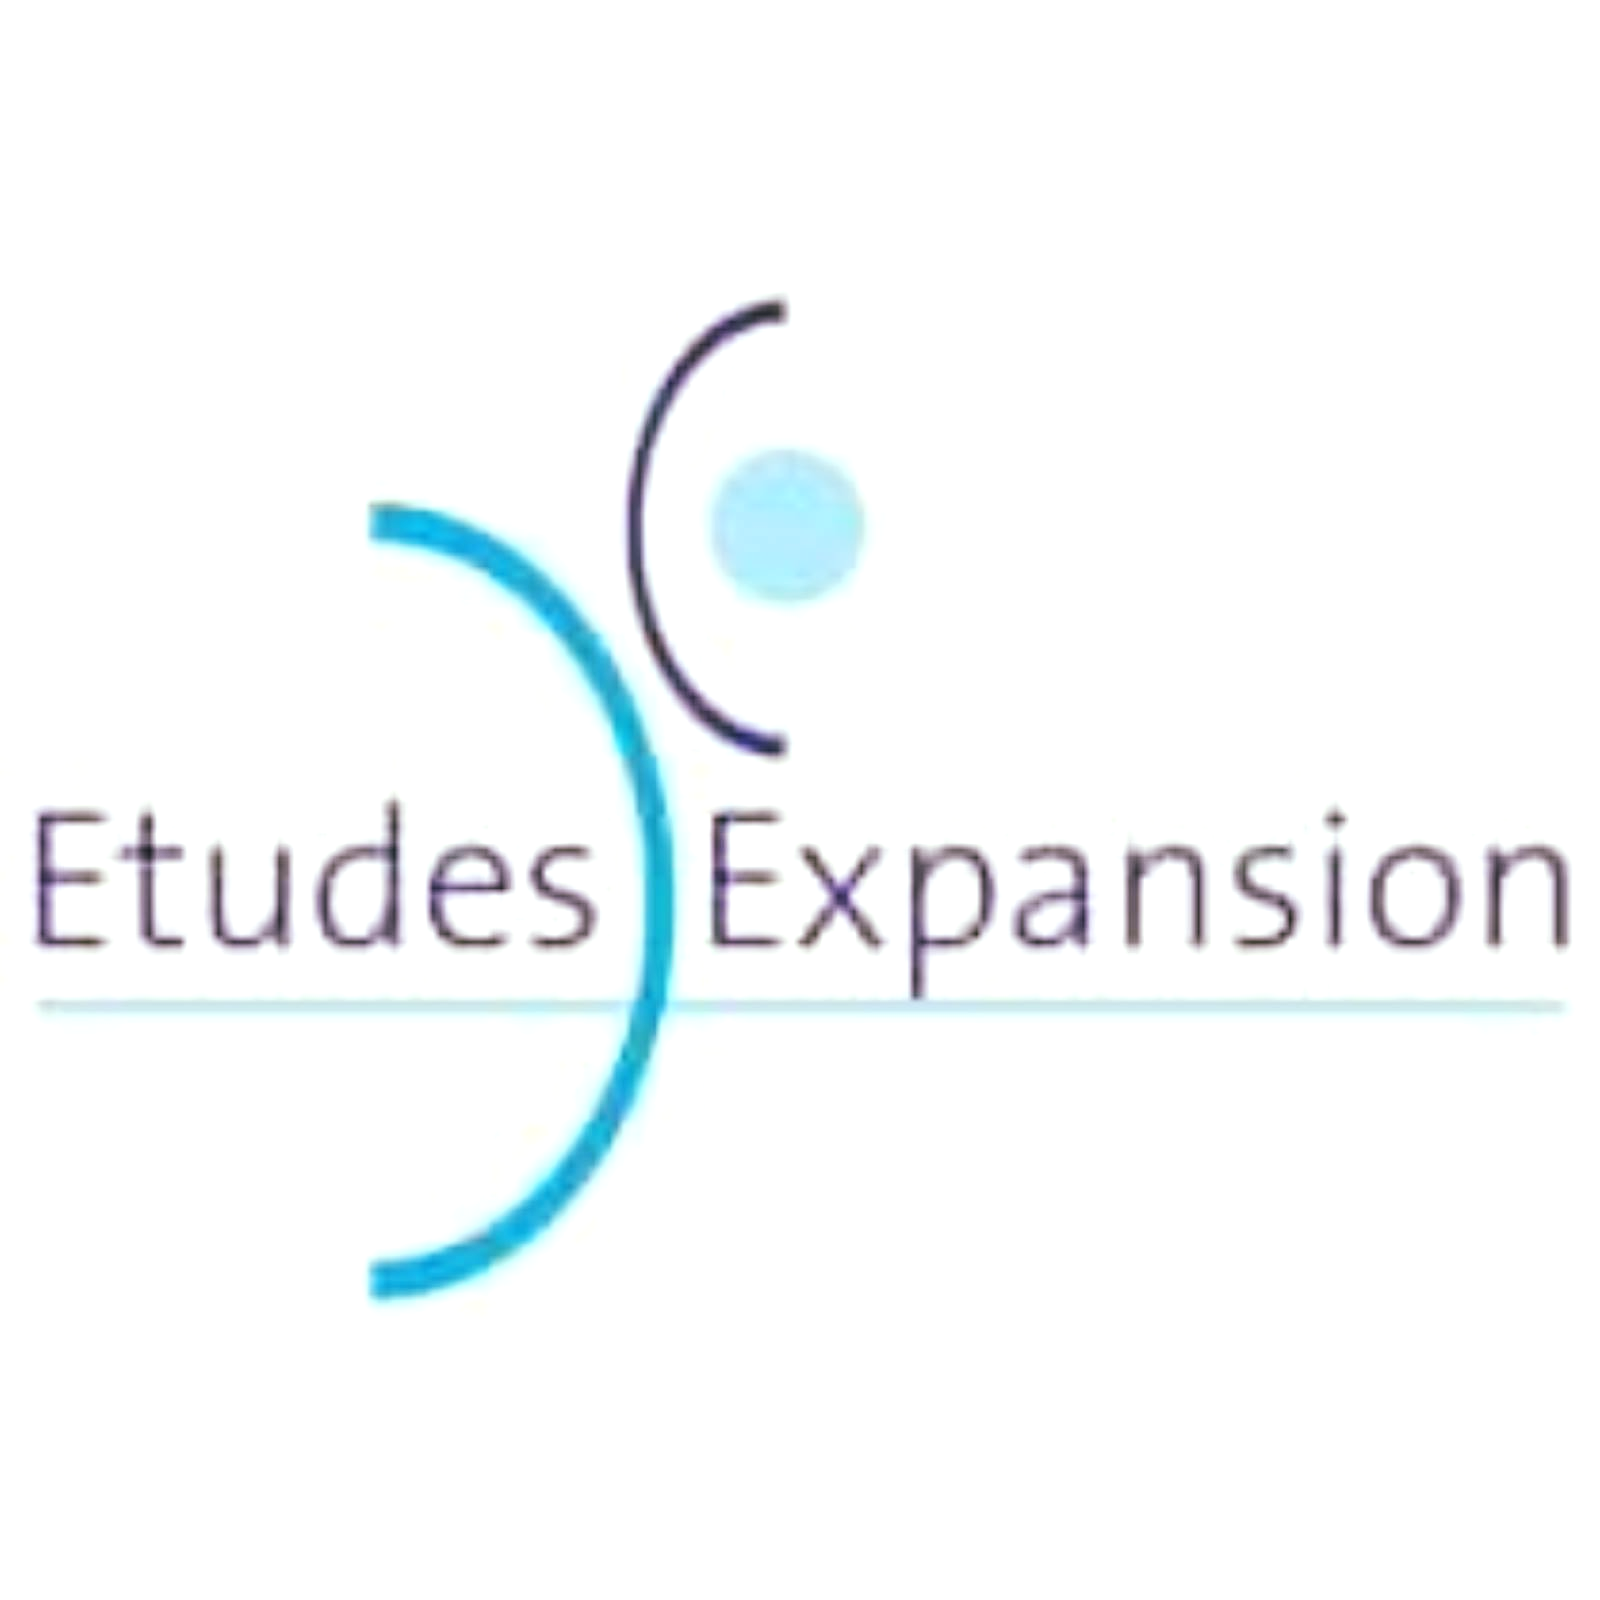 Etudes Expansions